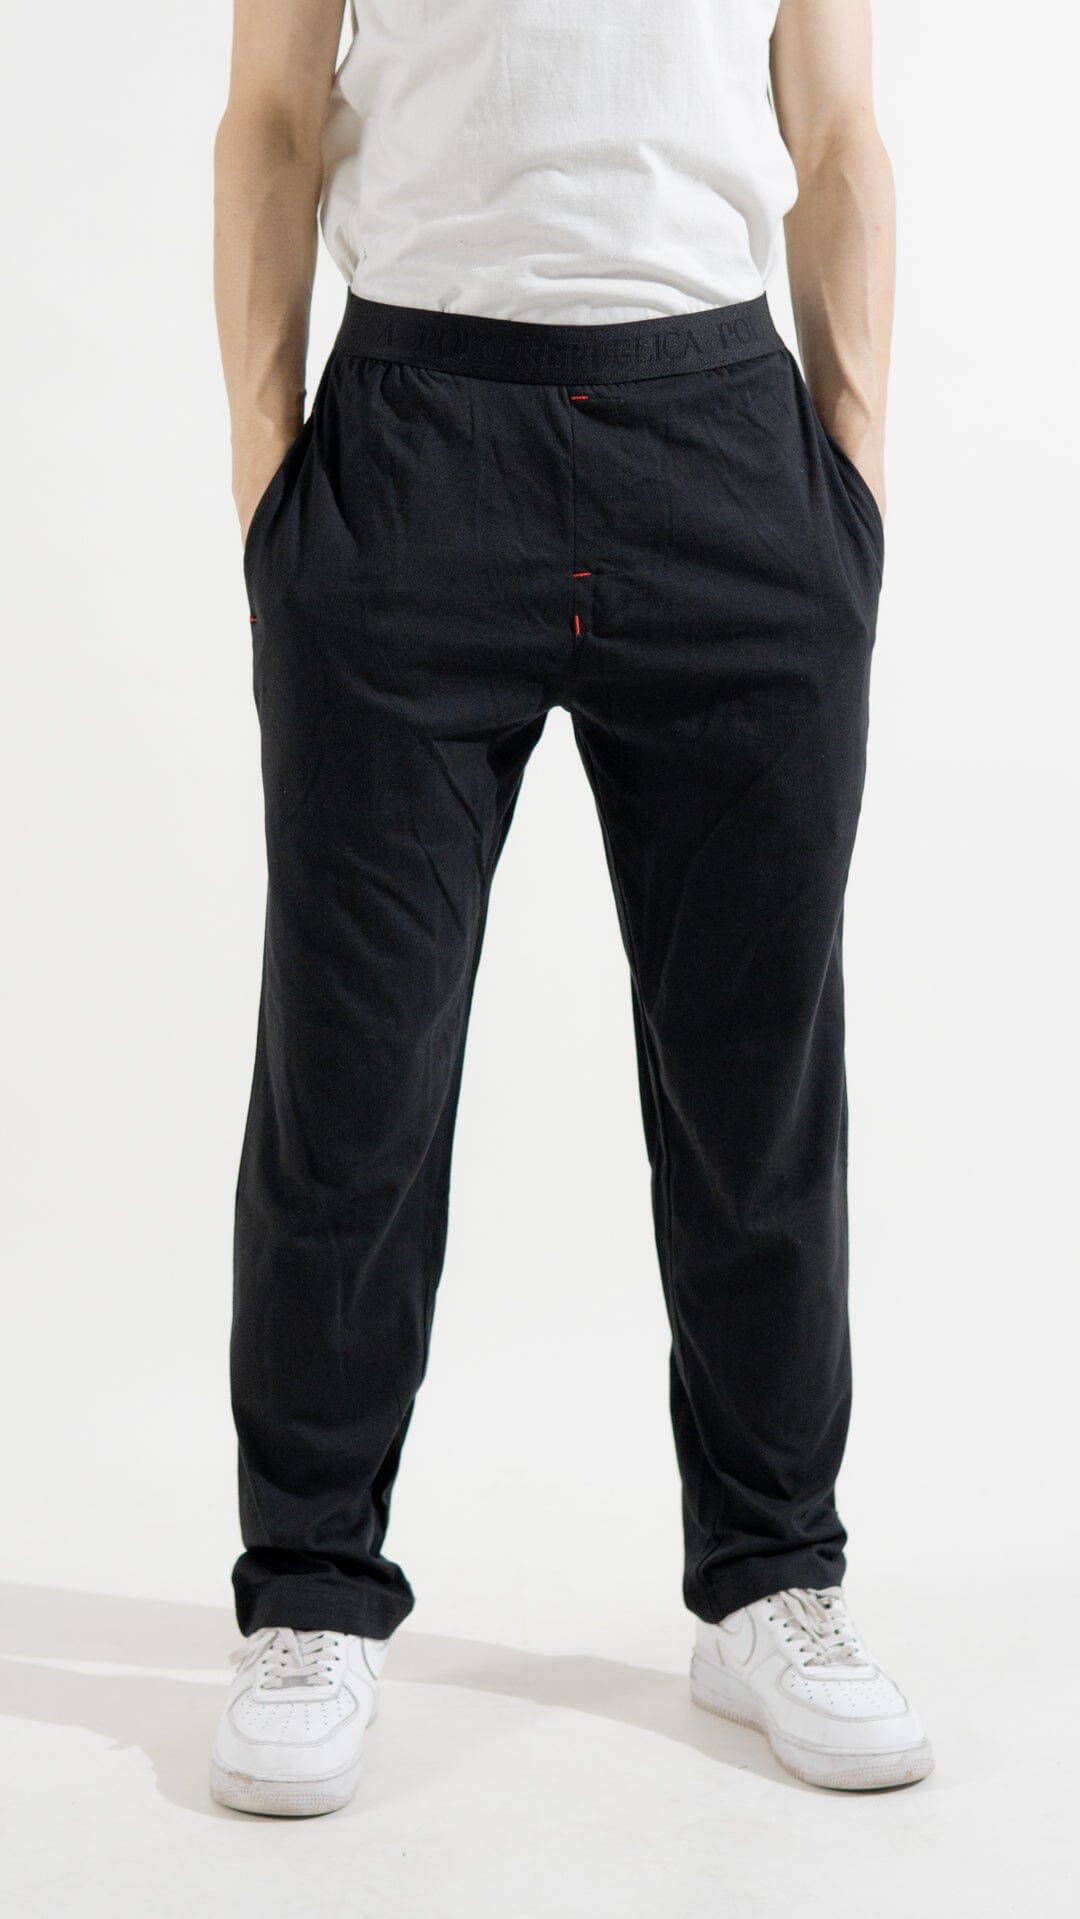 Polo Republica Men's Essentials Jersey Lounge Pants Men's Trousers Polo Republica Black S 